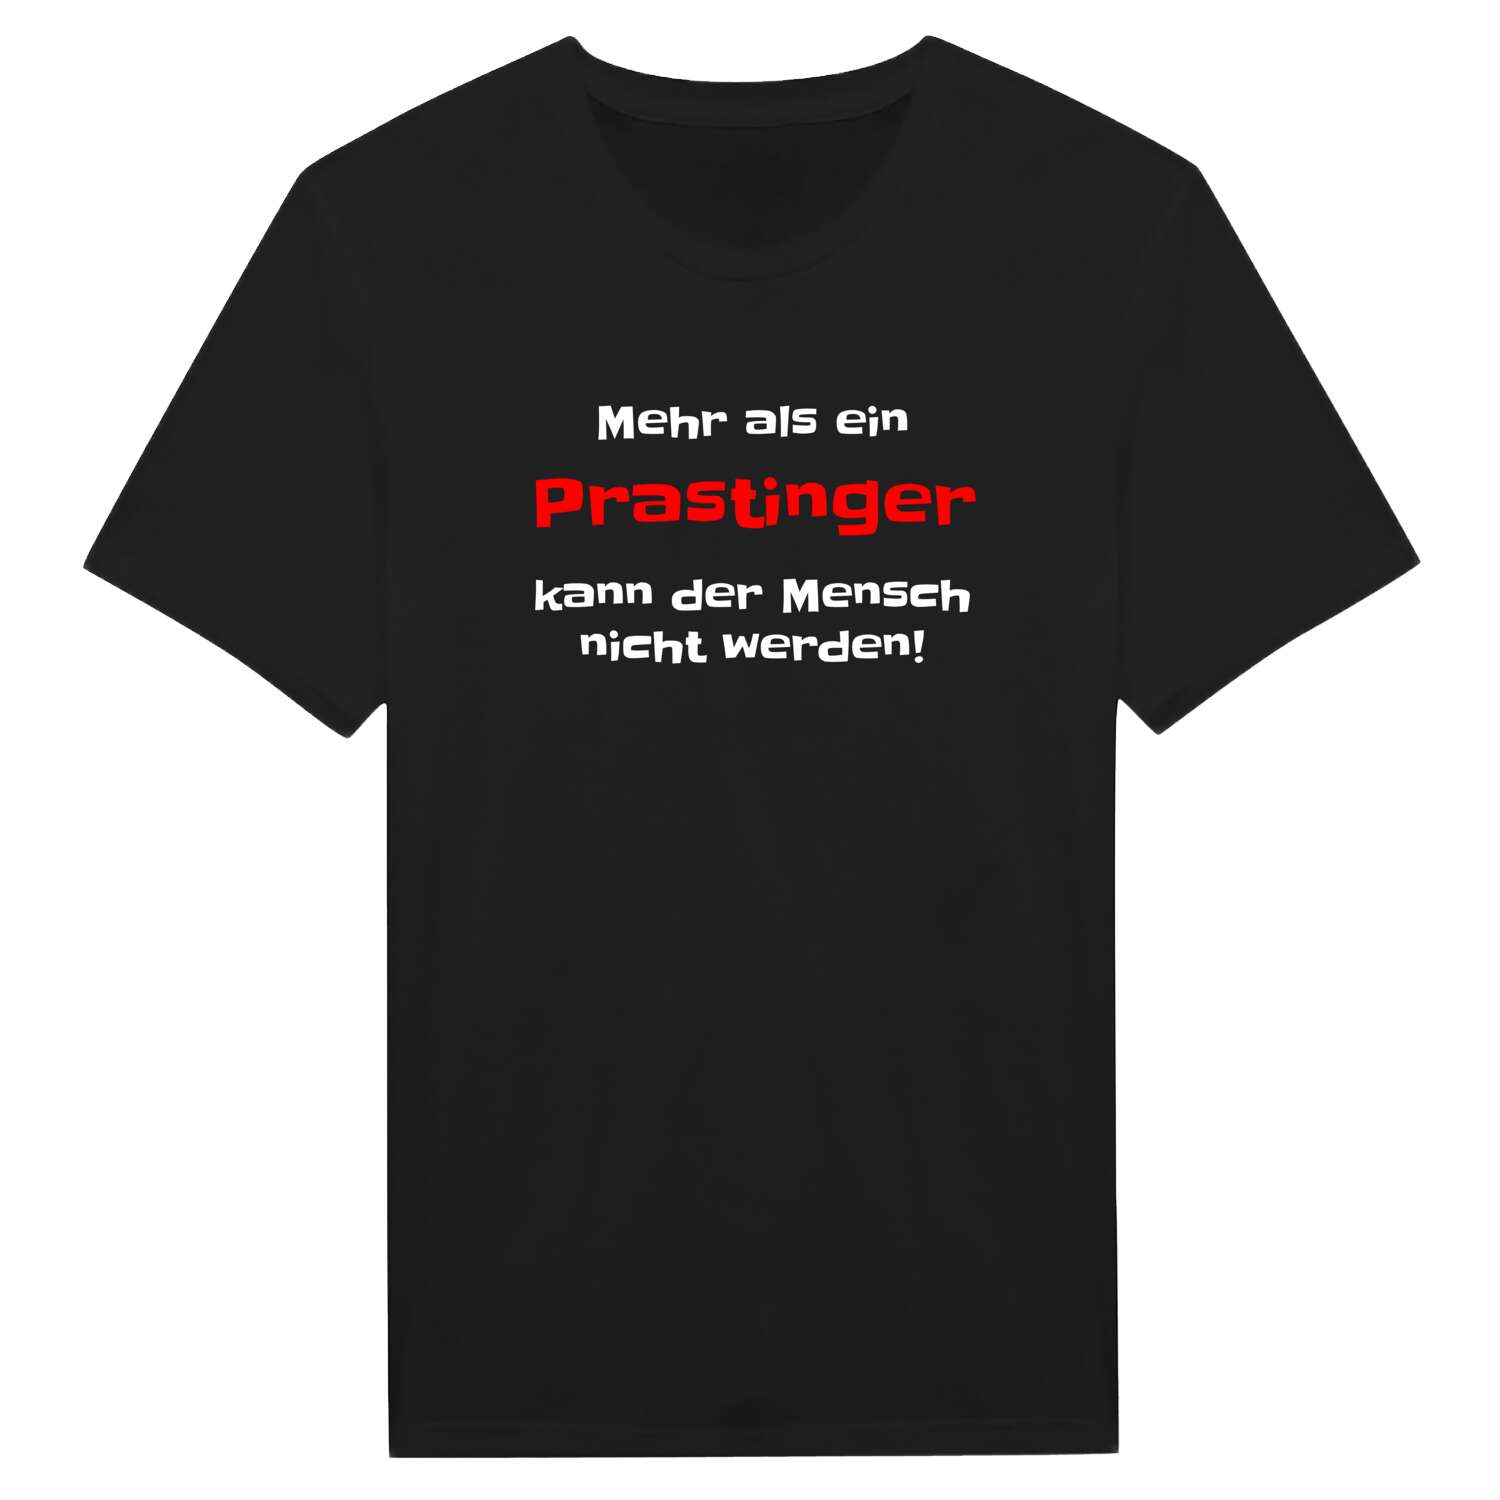 Prasting T-Shirt »Mehr als ein«